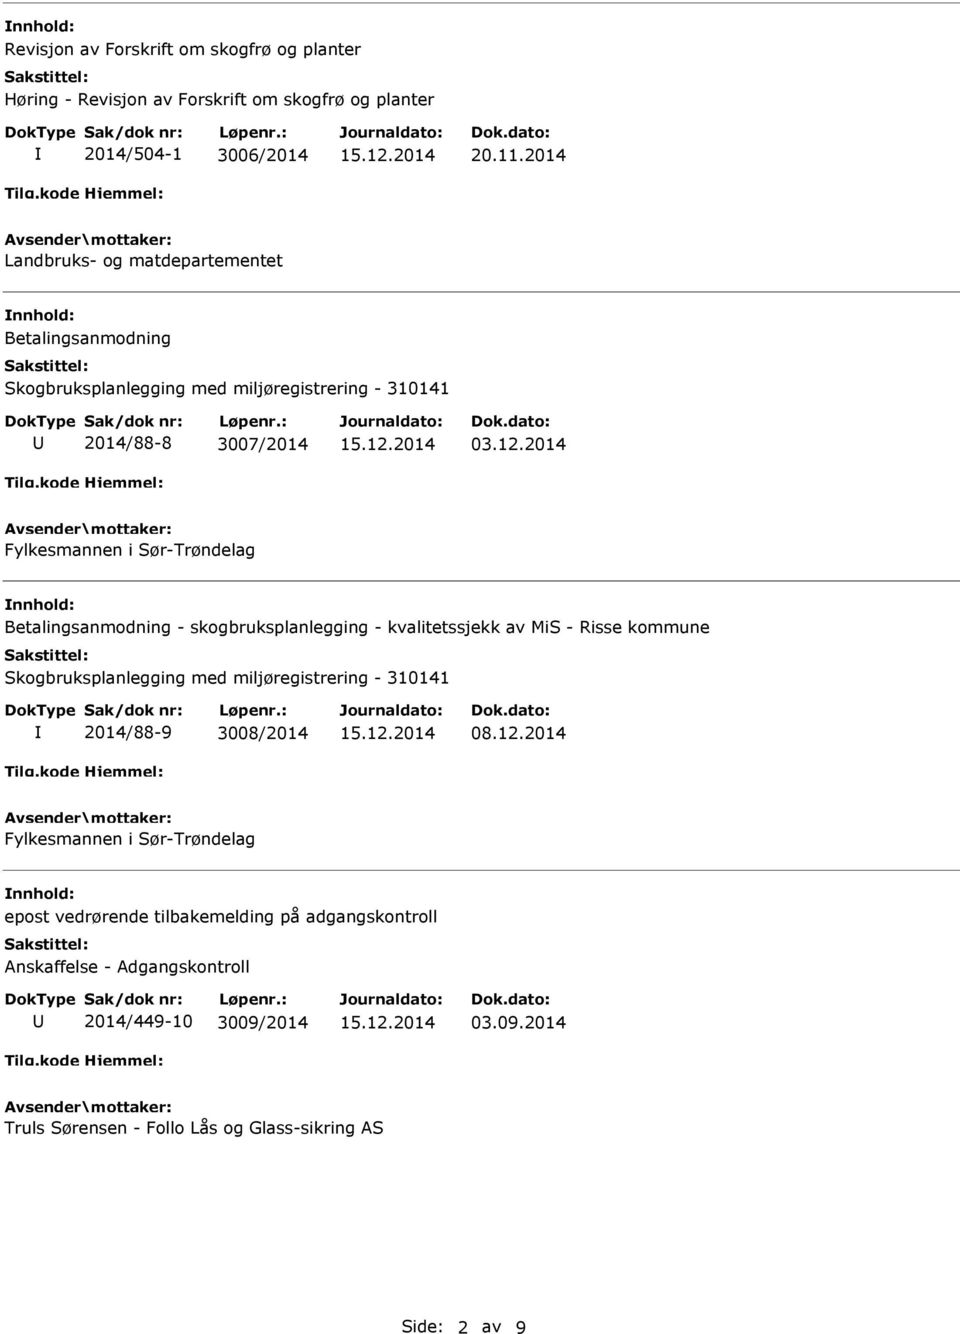 2014 Fylkesmannen i Sør-Trøndelag Betalingsanmodning - skogbruksplanlegging - kvalitetssjekk av MiS - Risse kommune Skogbruksplanlegging med